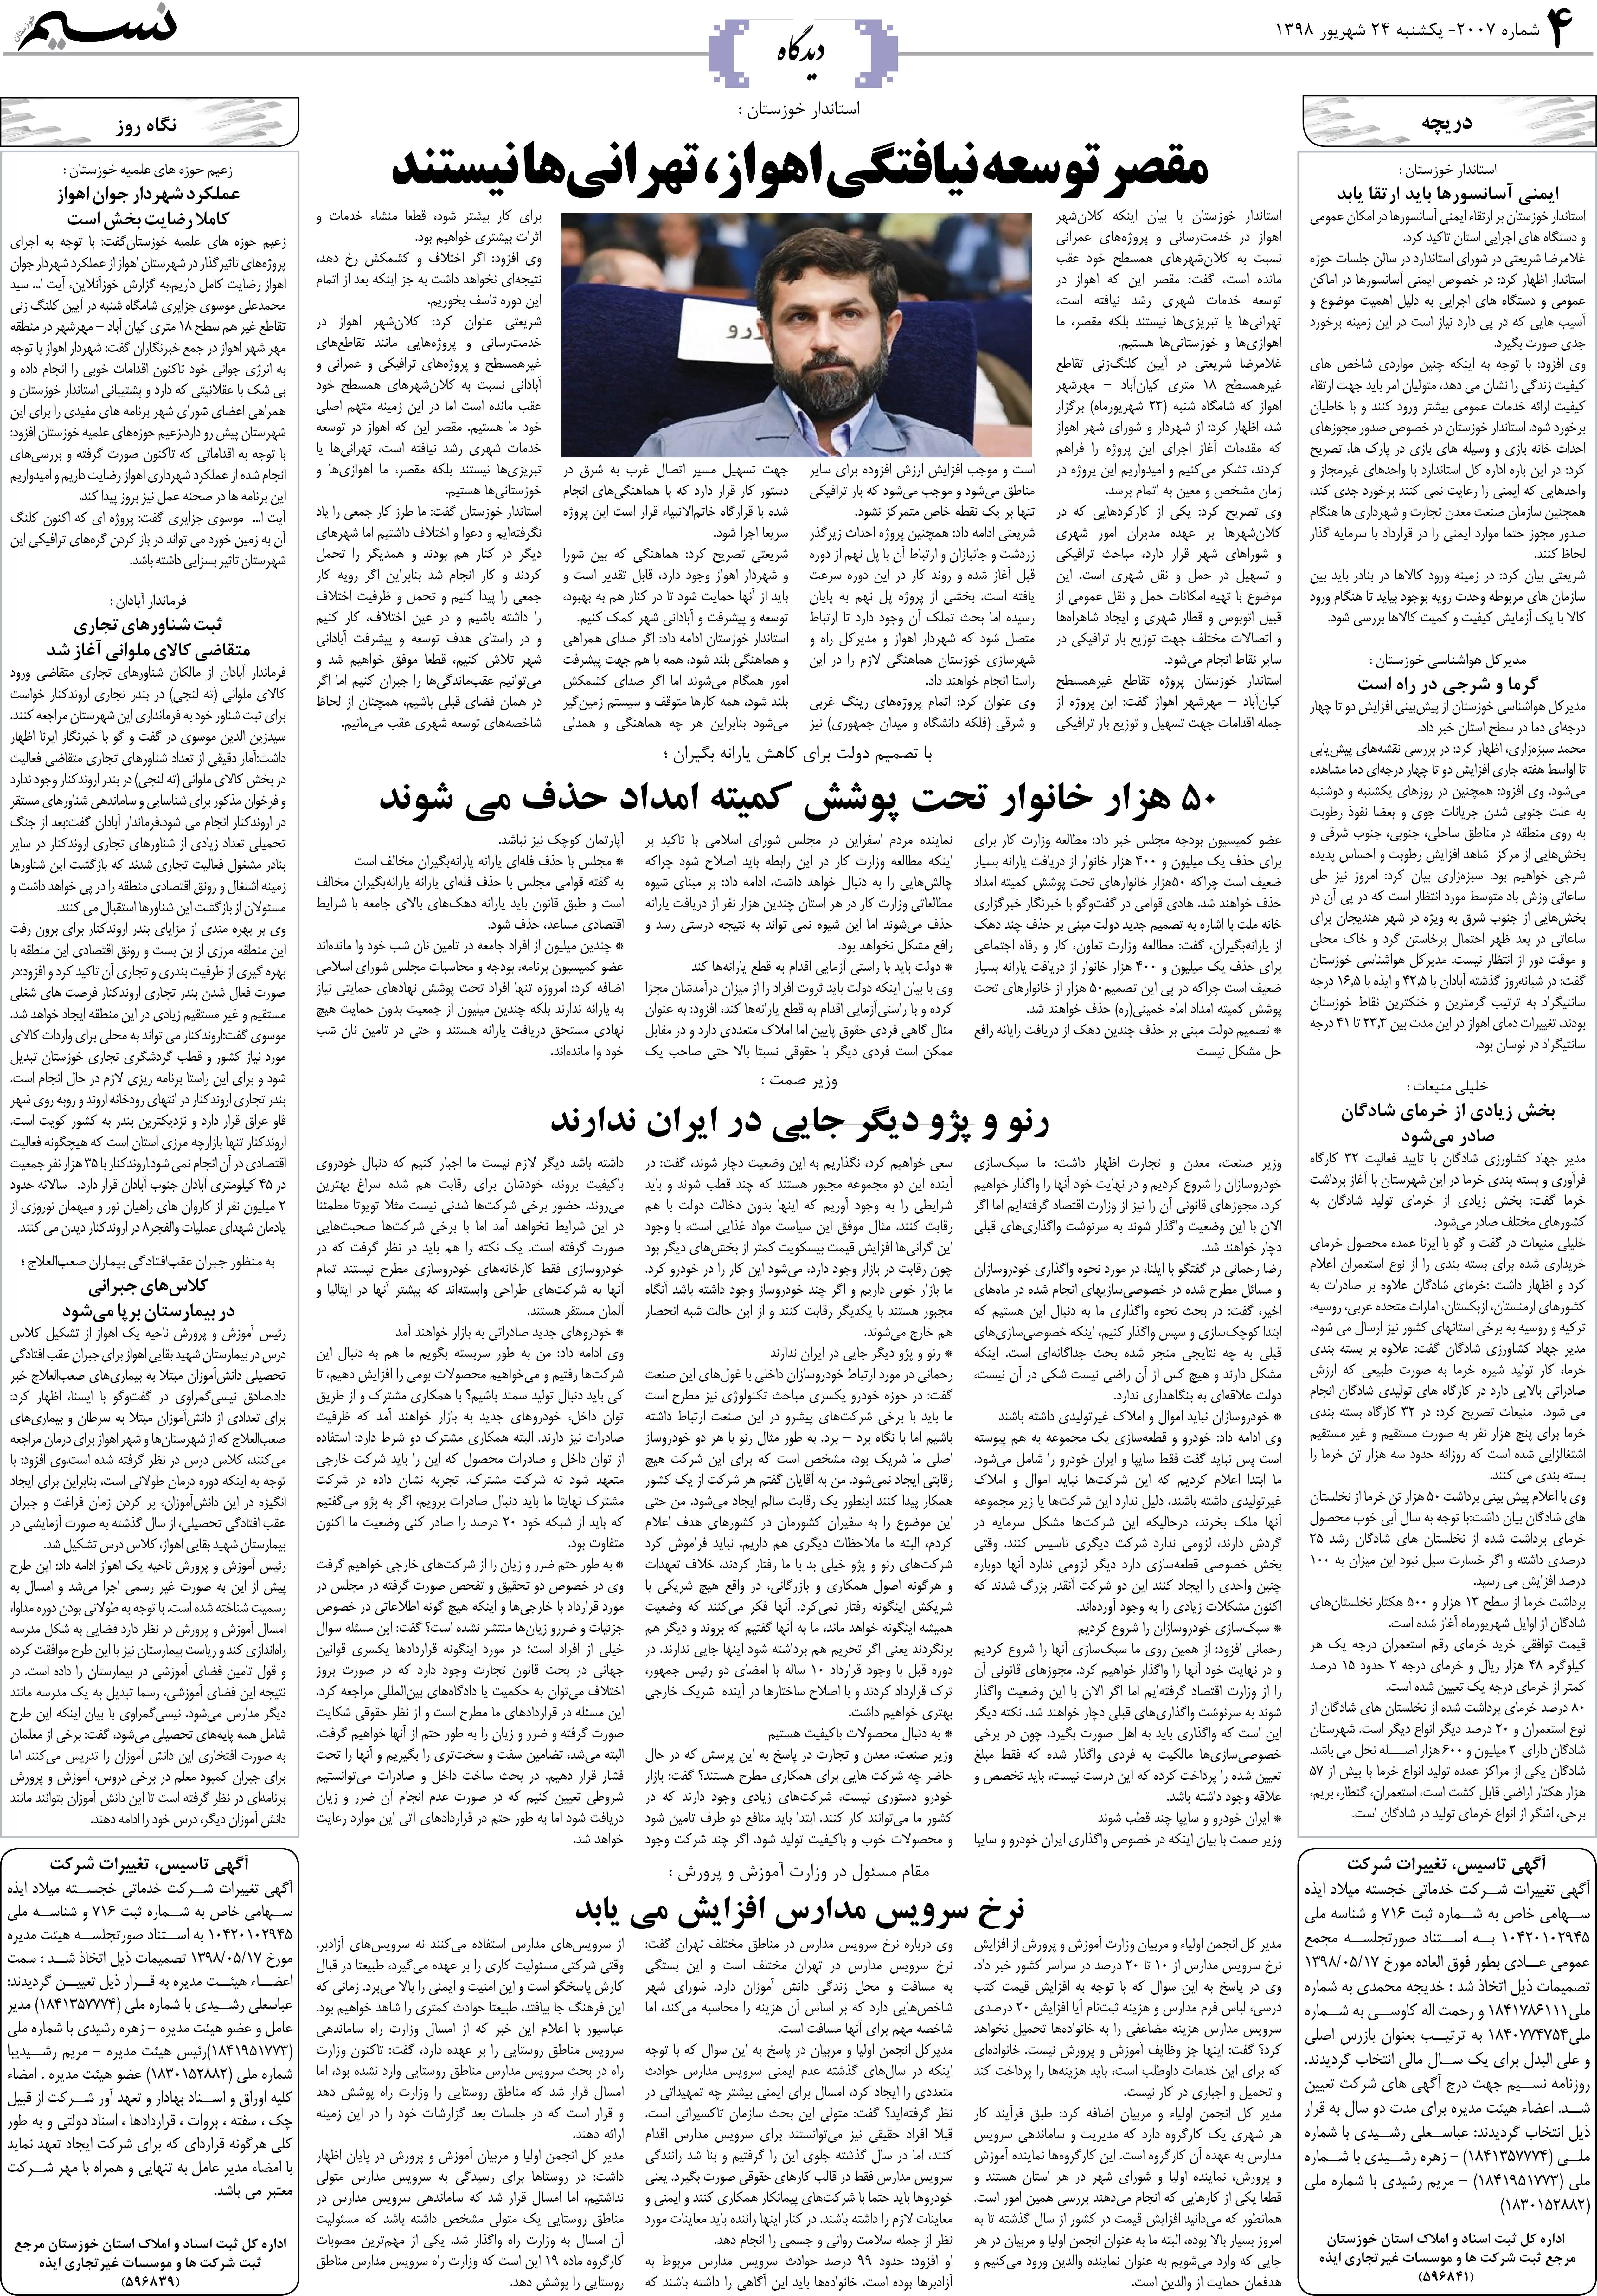 صفحه دیدگاه روزنامه نسیم شماره 2007